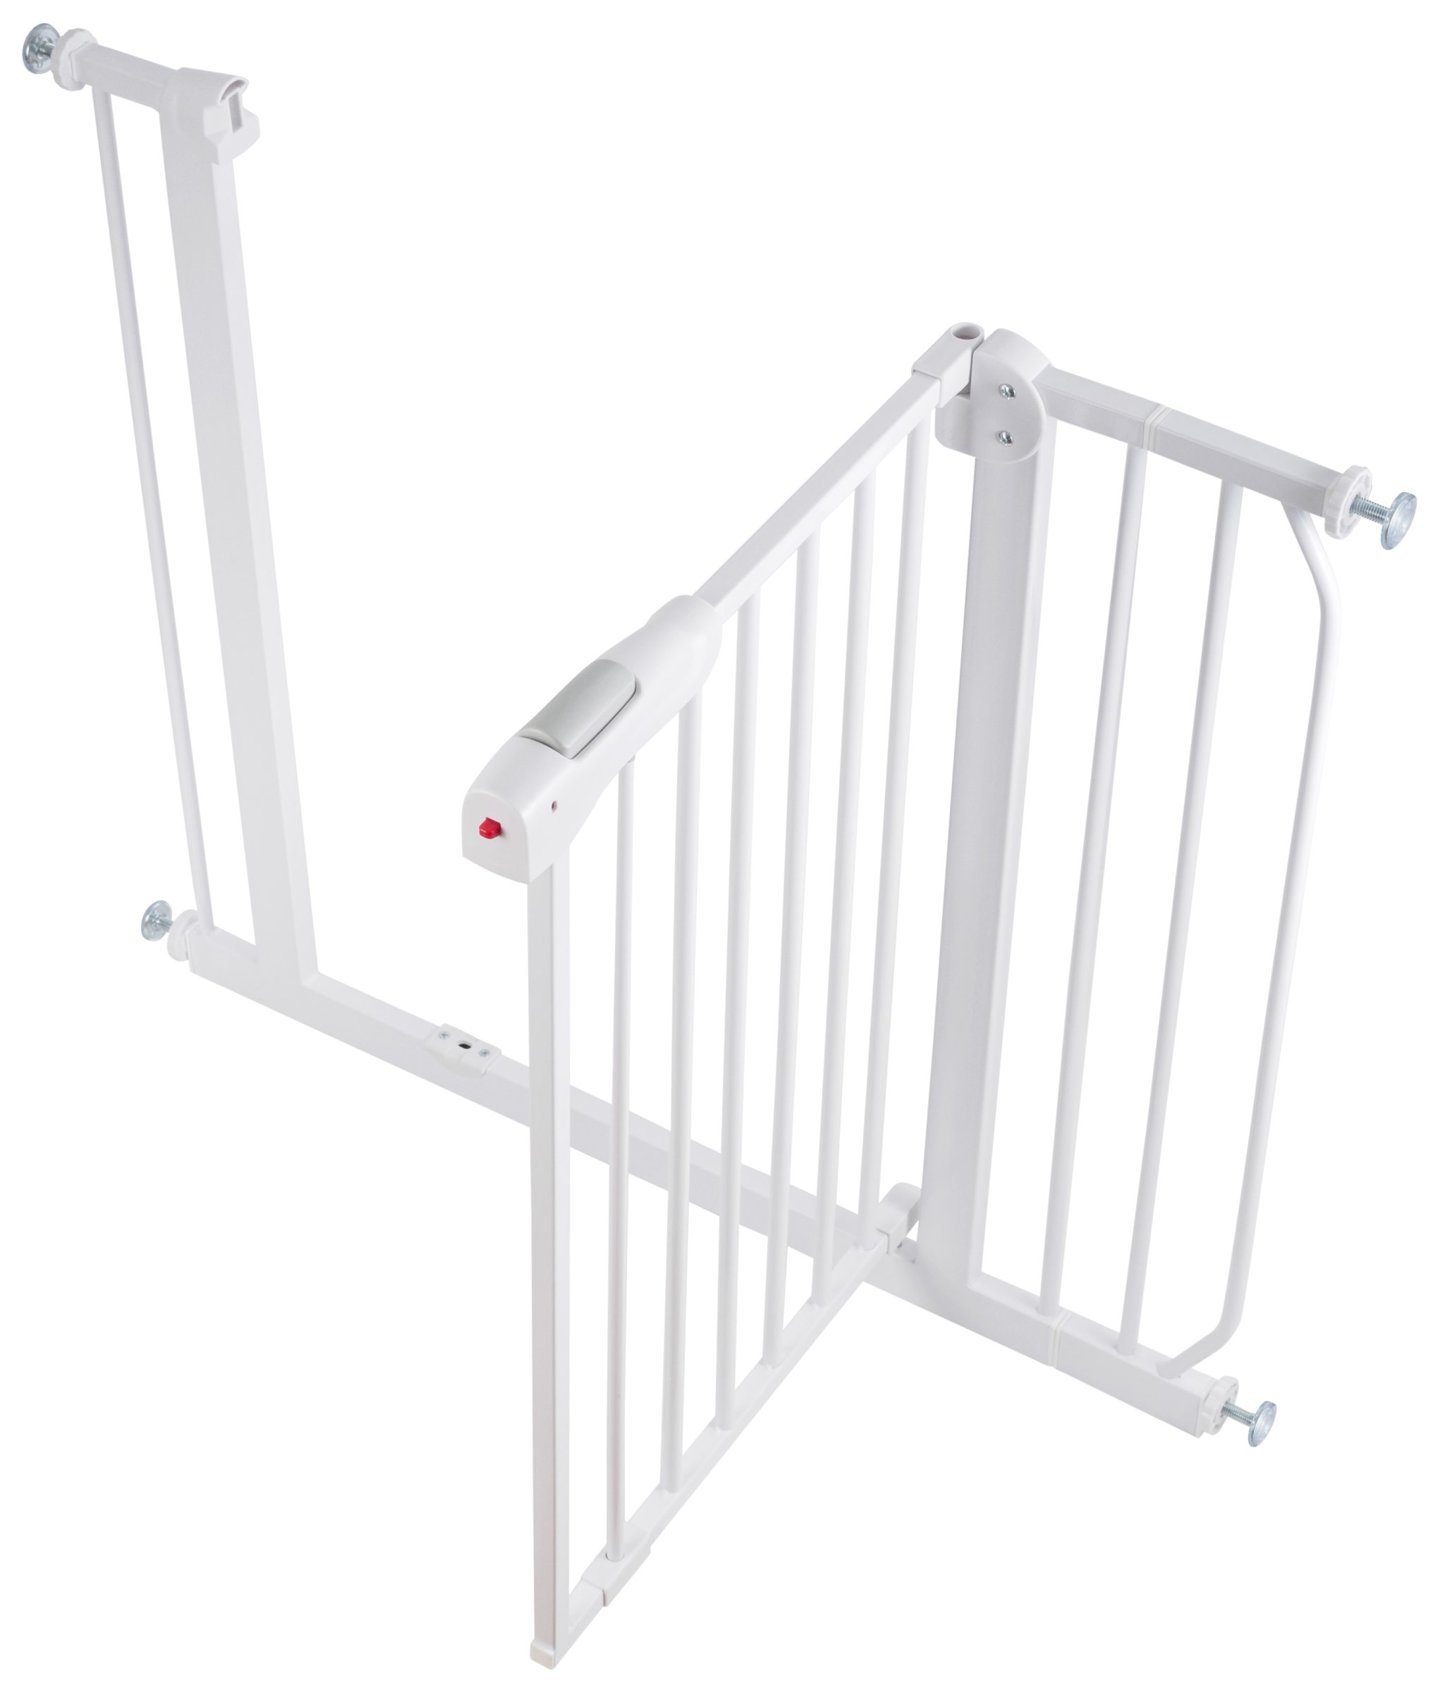 Bramka rozporowa do drzwi i schodów - barierka ochronna zabezpieczająca - szerokość 76...95cm